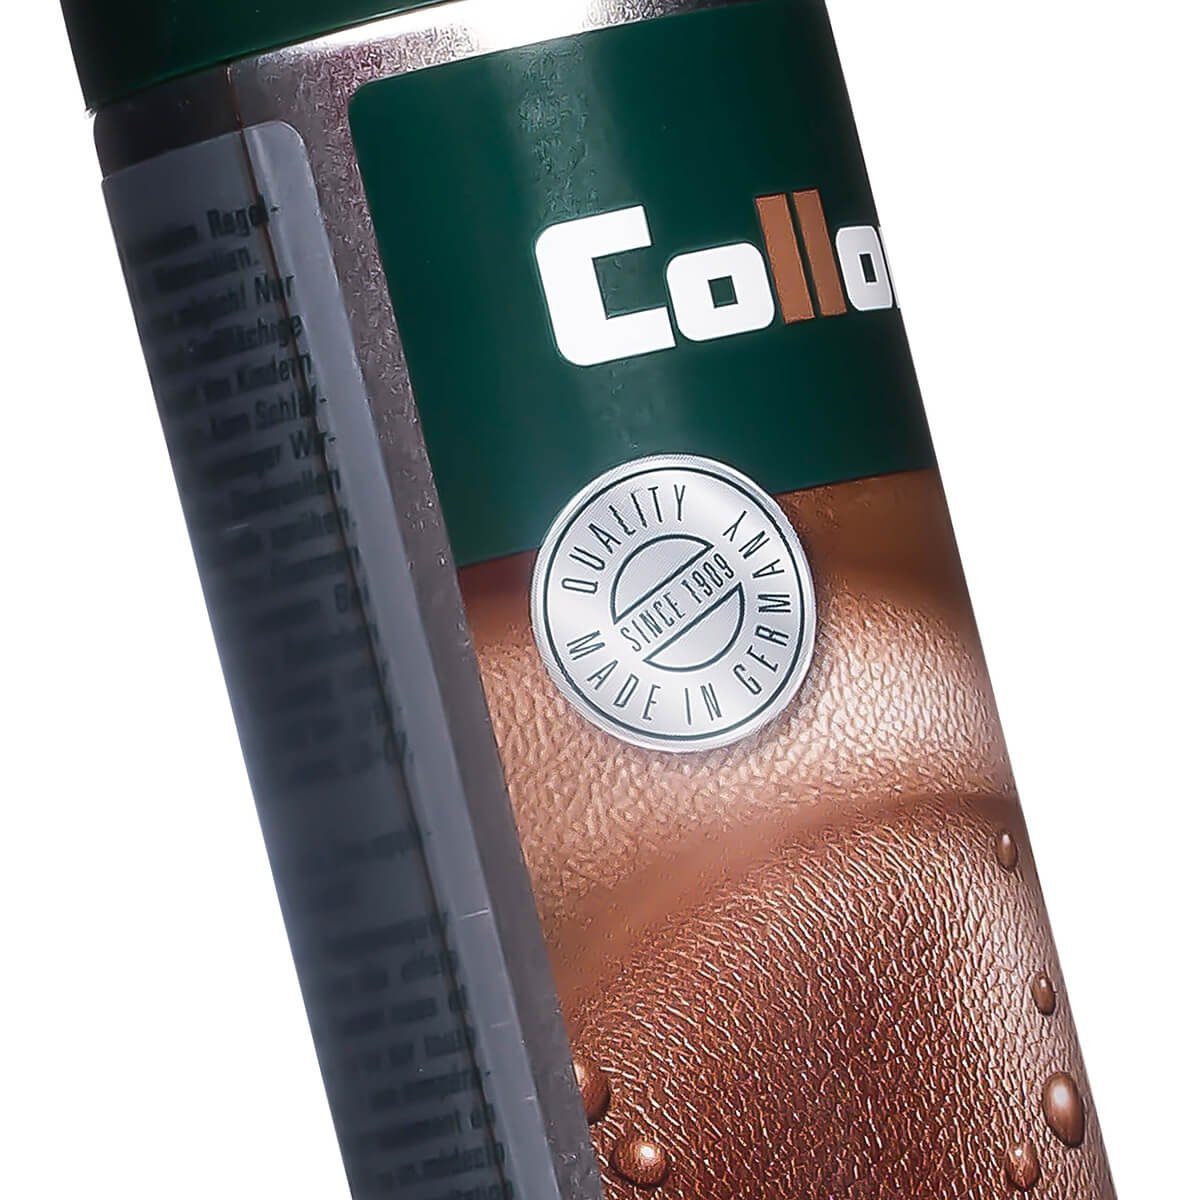 Leather Collonil Imprägnierspray Schuh-Imprägnierschaum - Proof für alle ohne Treibgas Materialien